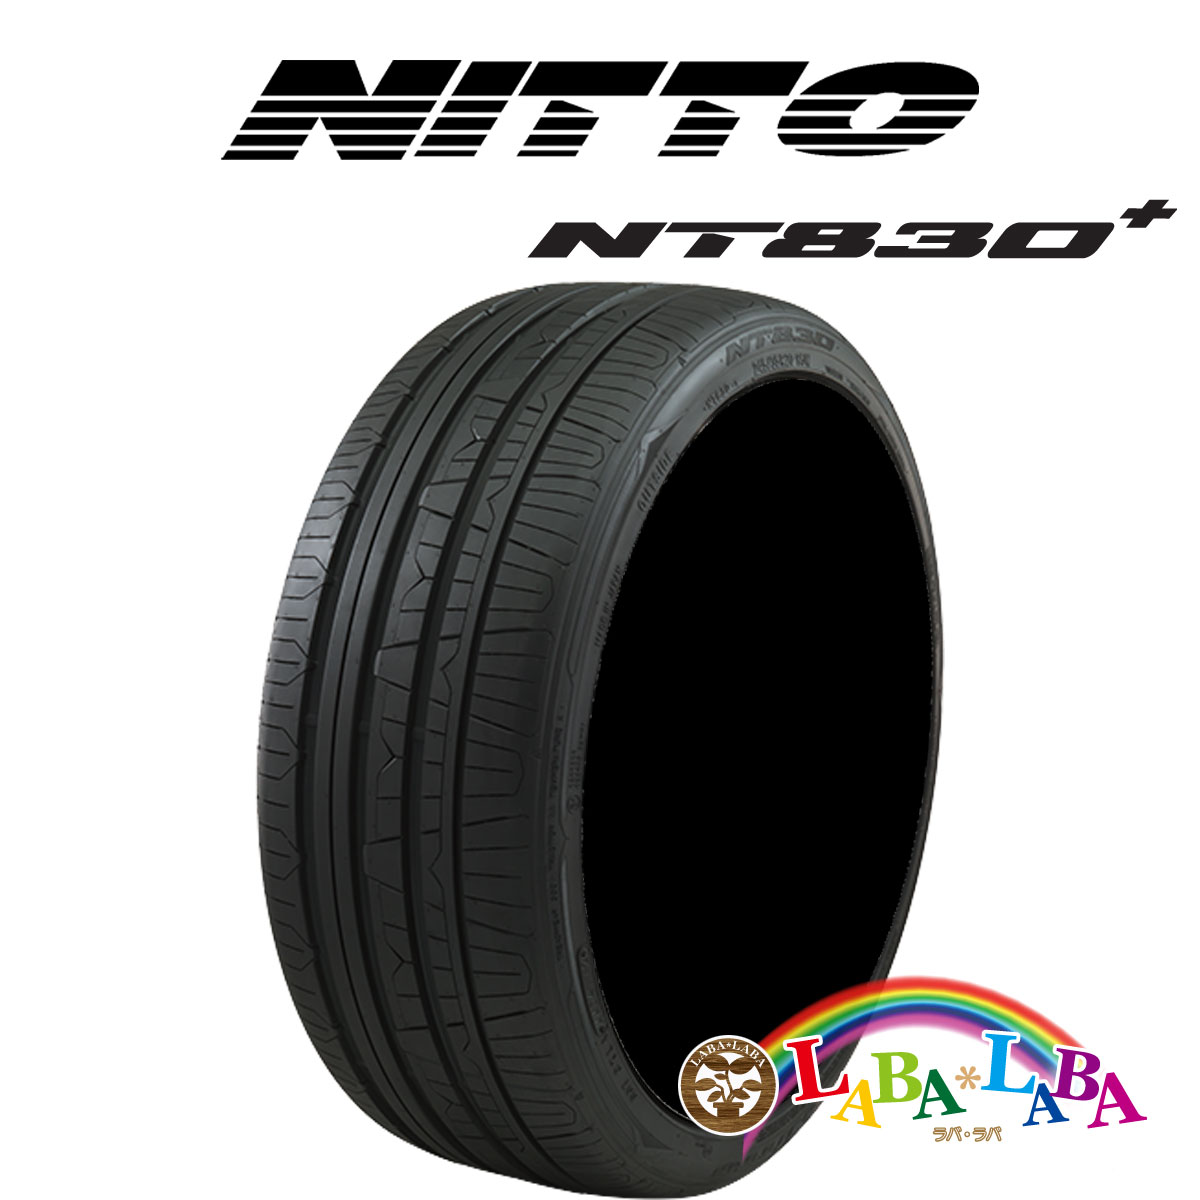 NITTO ニットー NT830 plus 225/50R17 98Y XL サマータイヤ